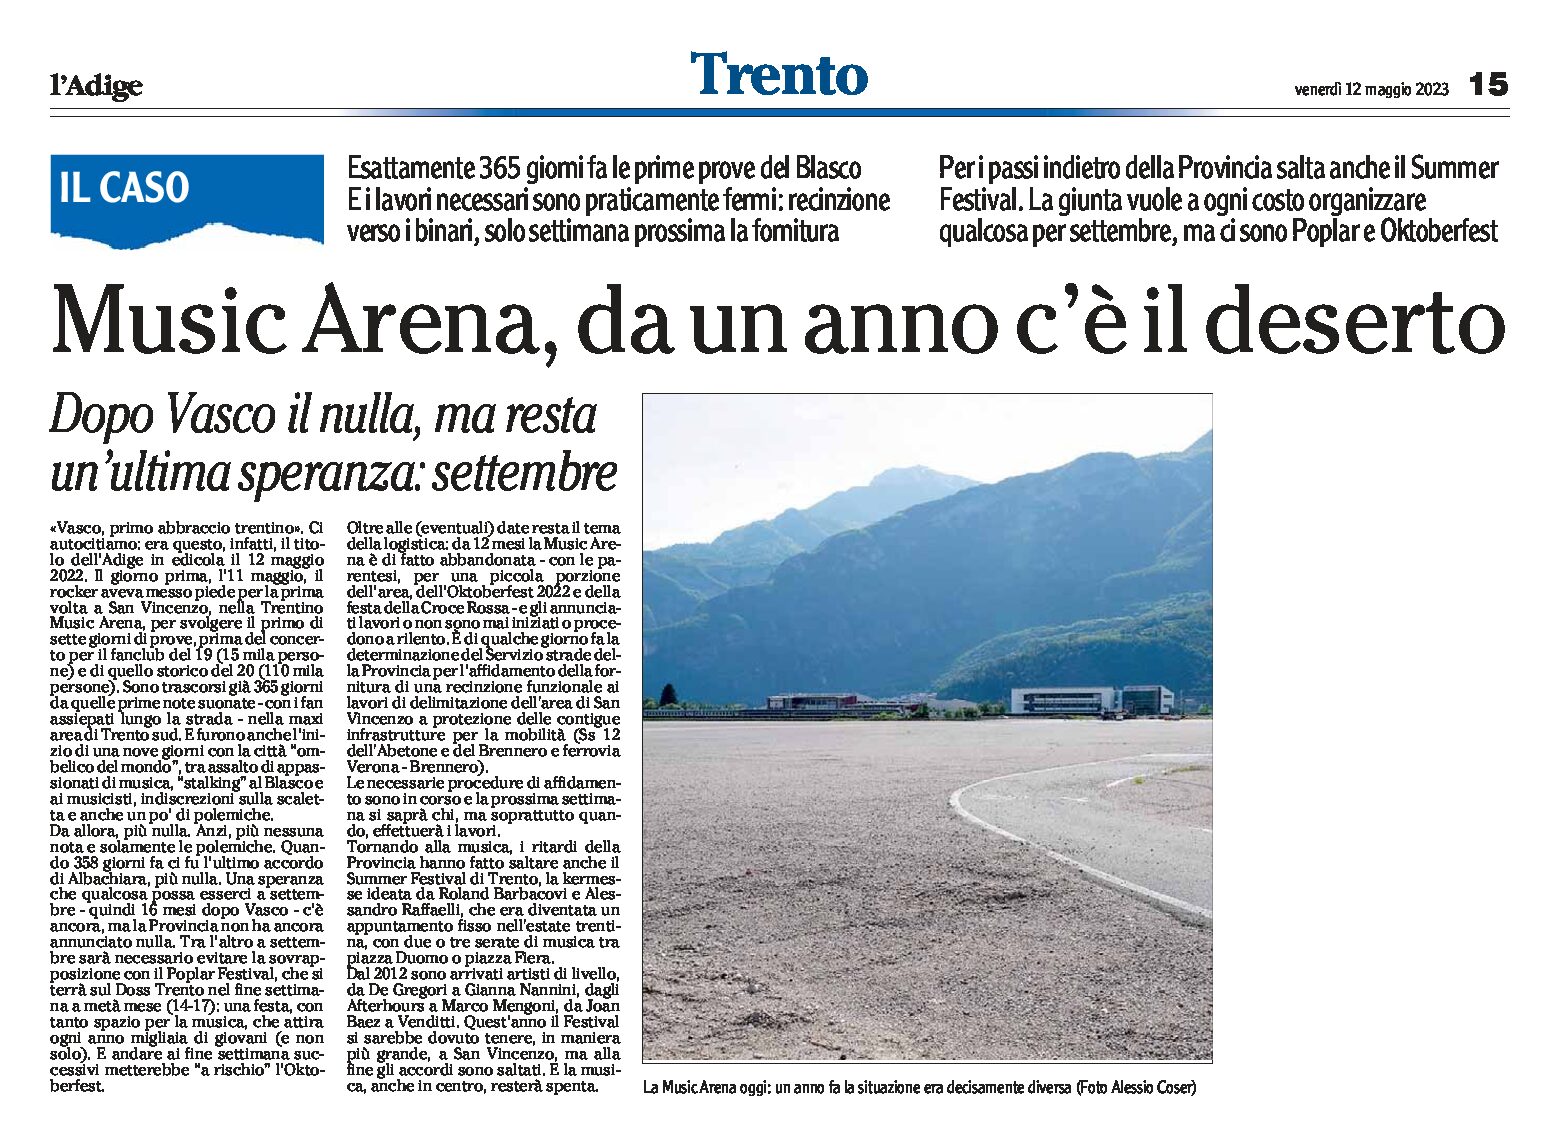 Trento, Music Arena: da un anno c’è il deserto. Dopo Vasco il nulla